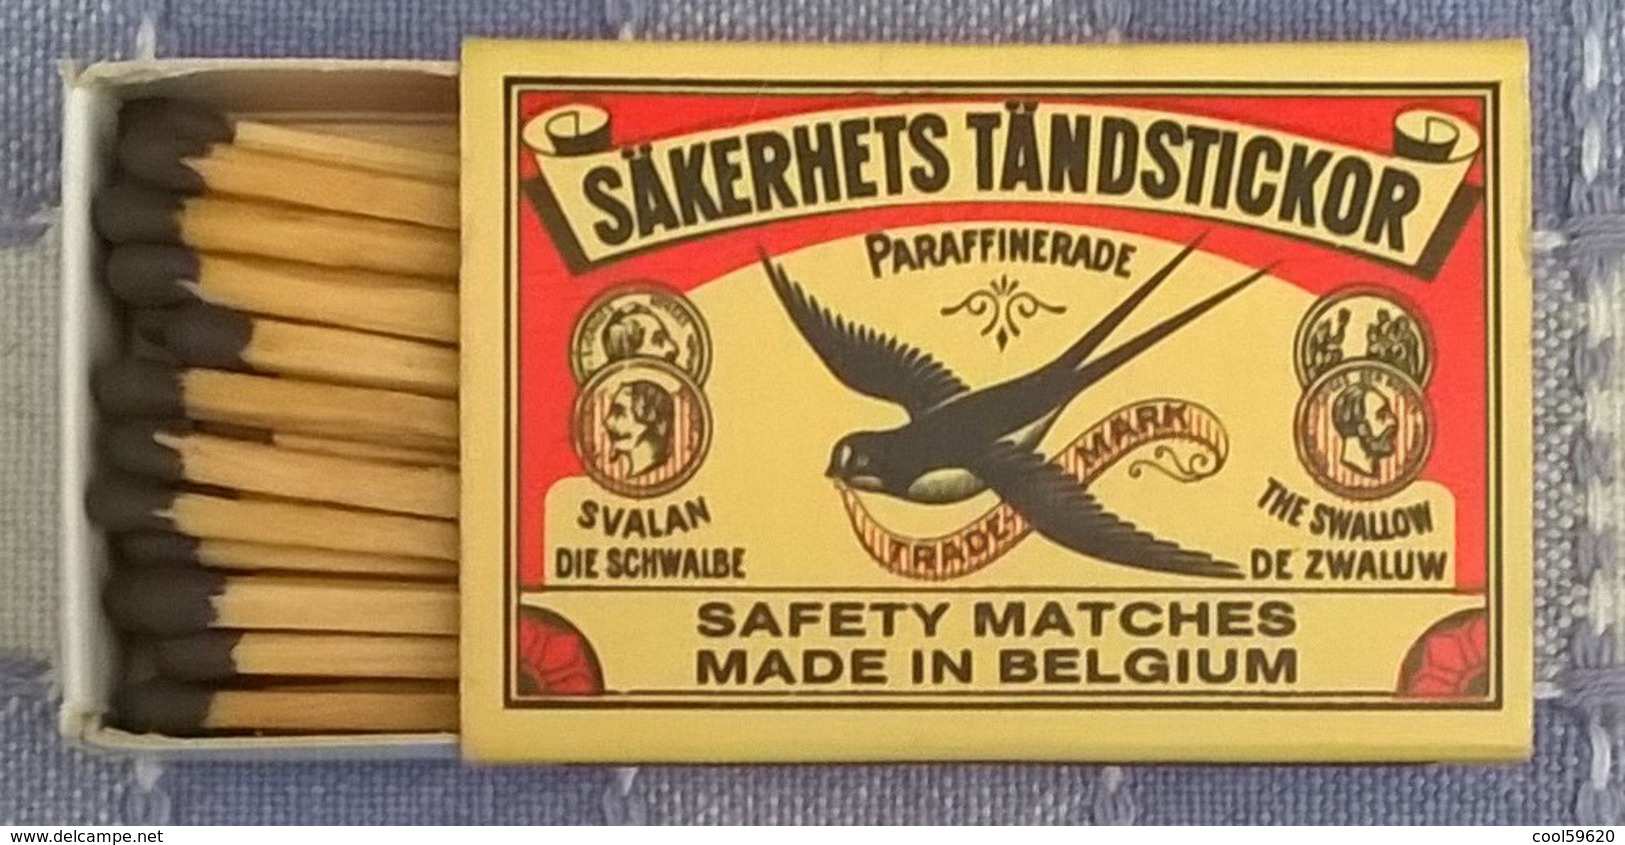 Säkerhets Tändstickor, Made In Belgium - Matchboxes